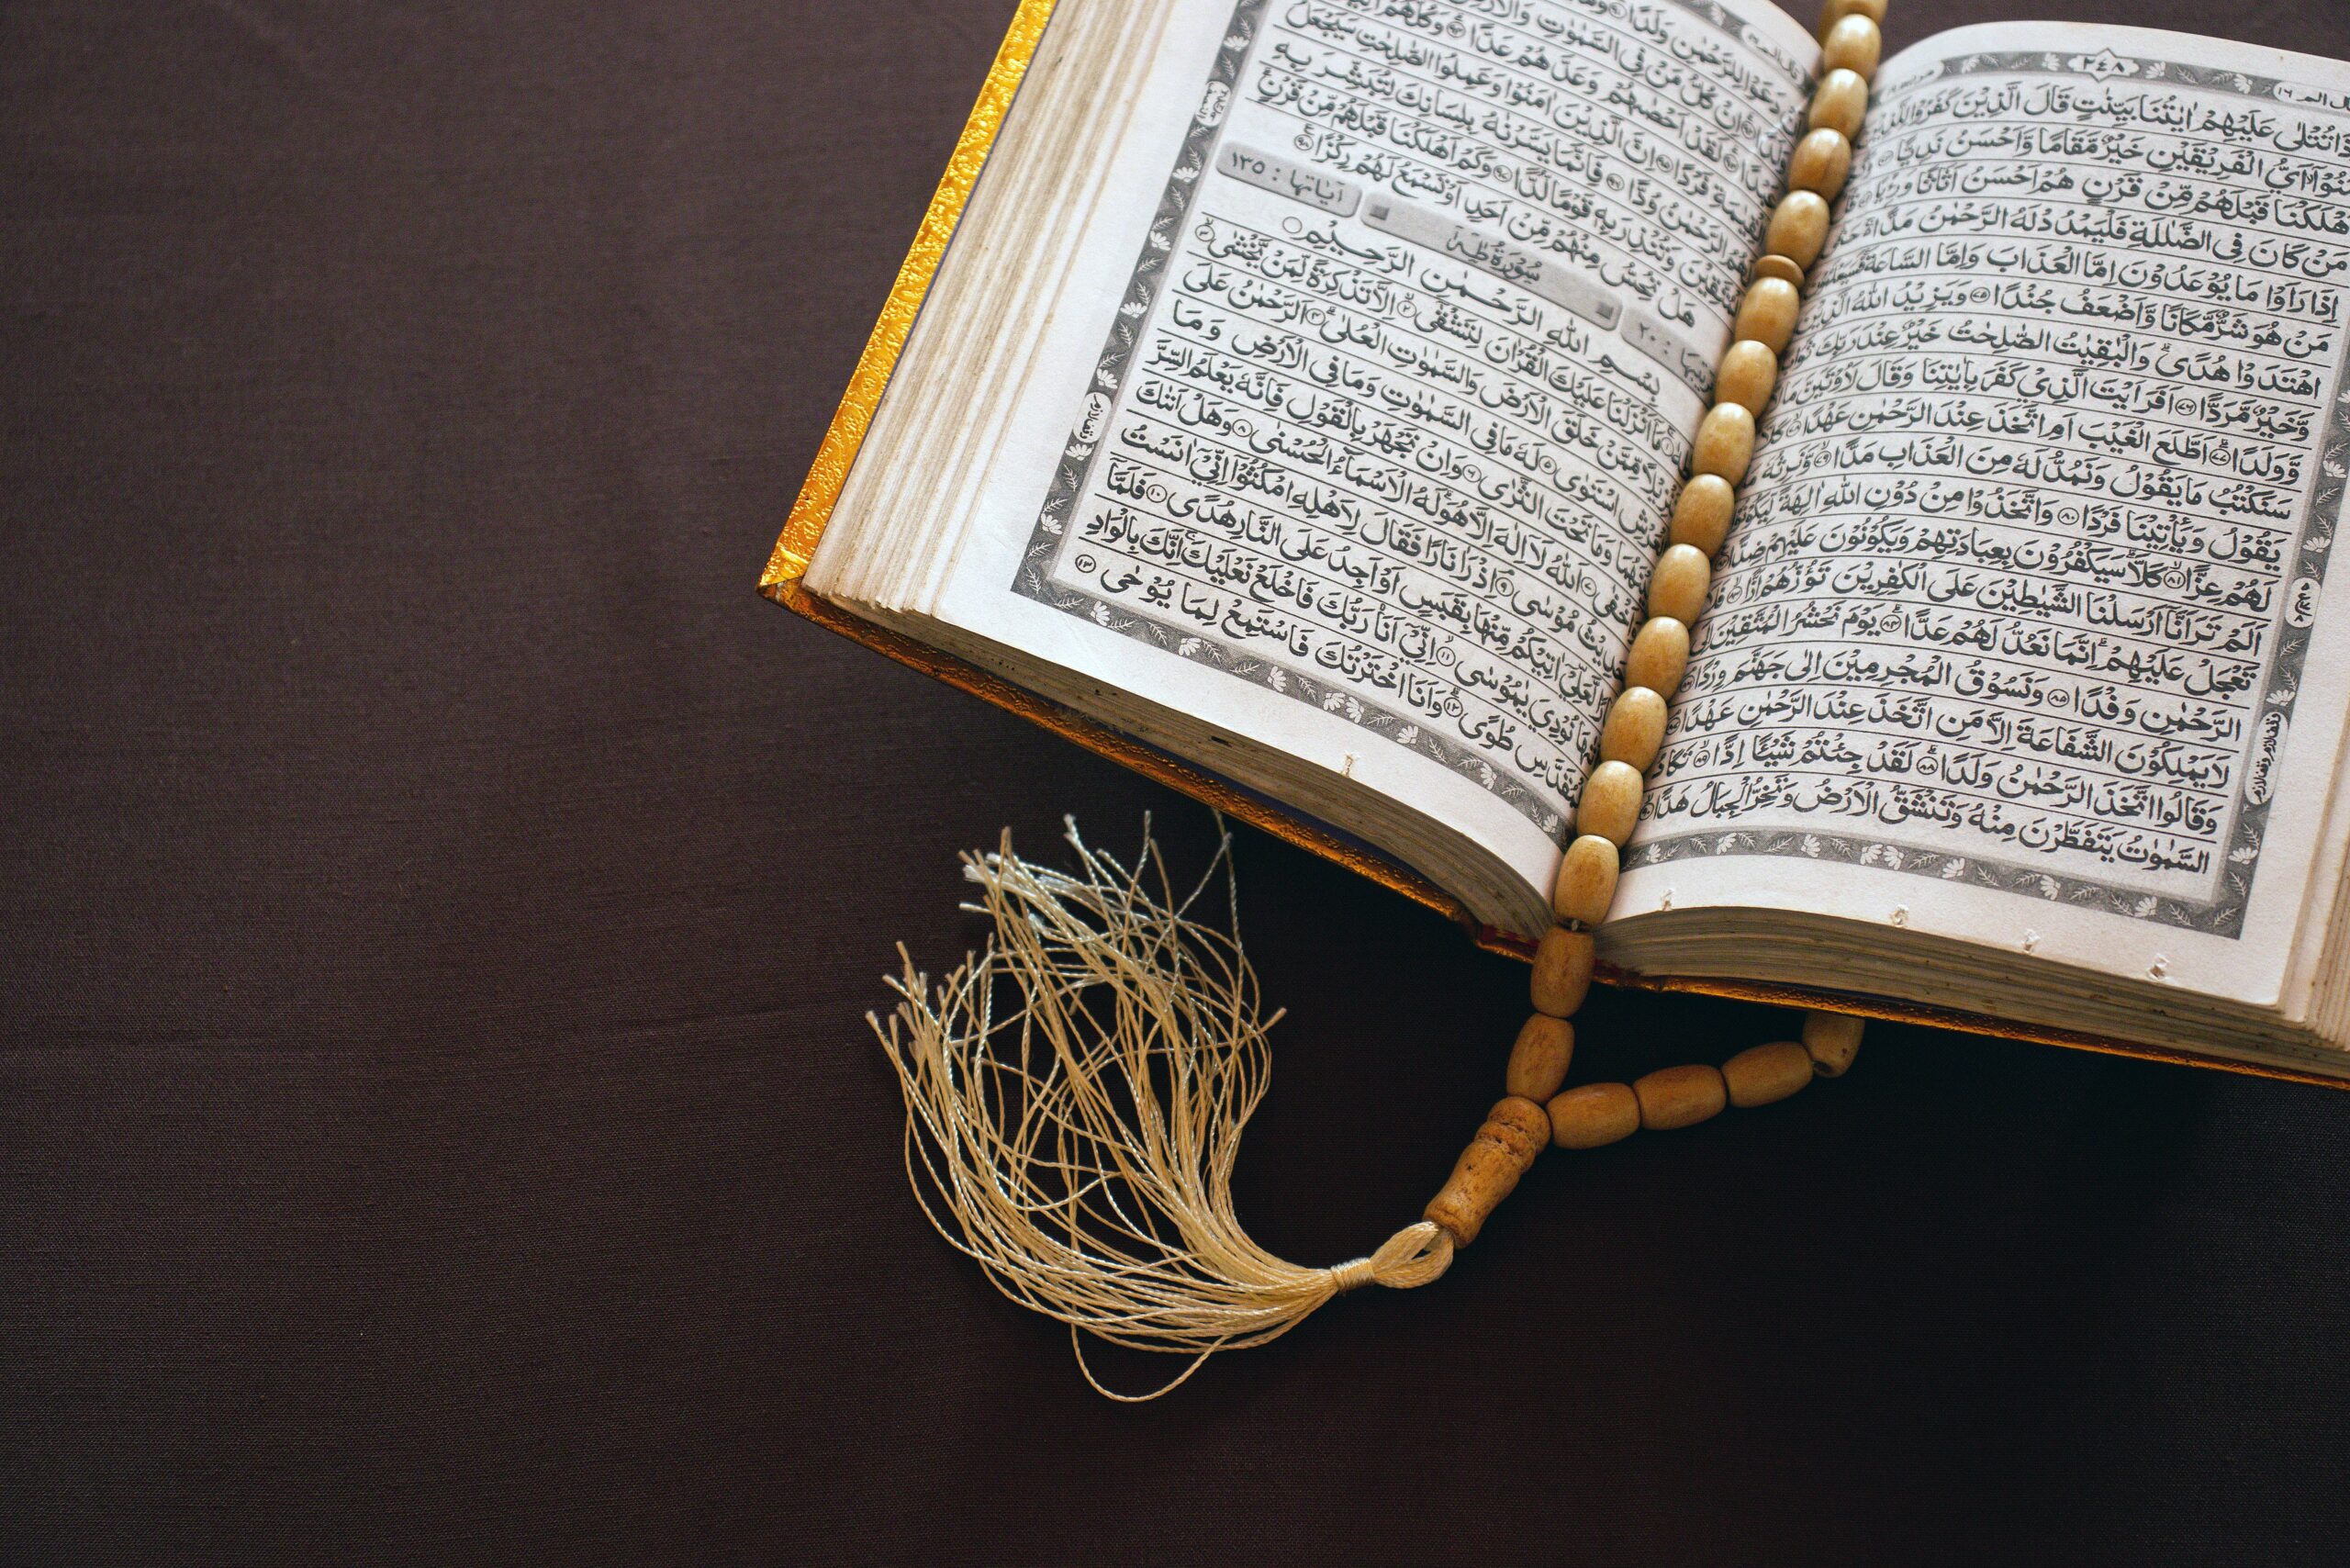 المملكة تتصدر إدانة العرب لتمزيق القرآن في لاهاي